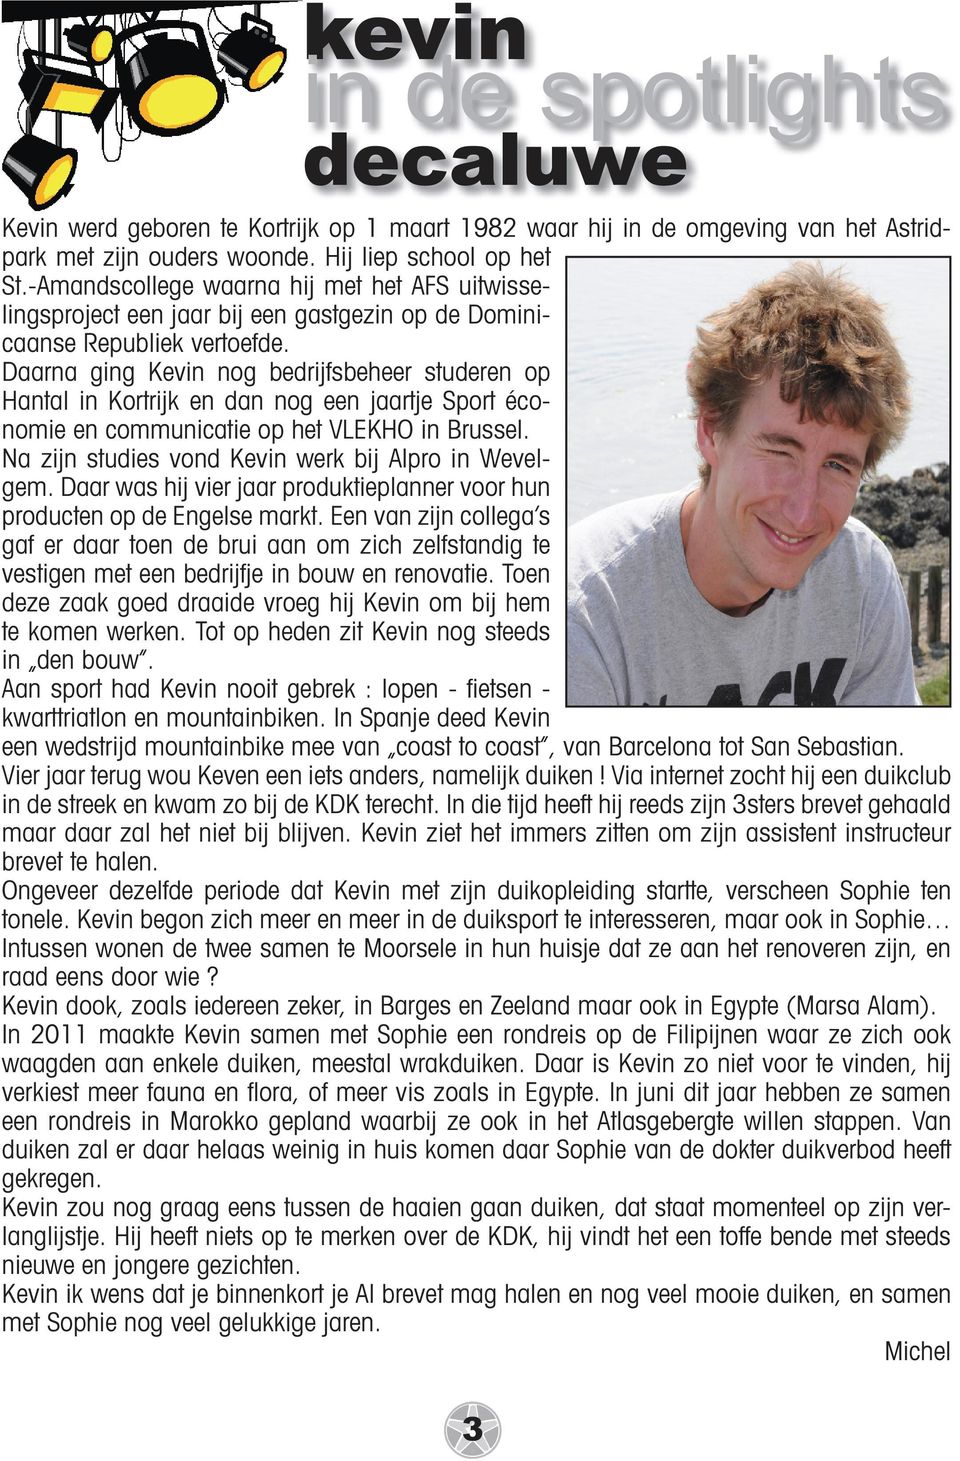 Daarna ging Kevin nog bedrijfsbeheer studeren op Hantal in Kortrijk en dan nog een jaartje Sport économie en communicatie op het VLEKHO in Brussel.